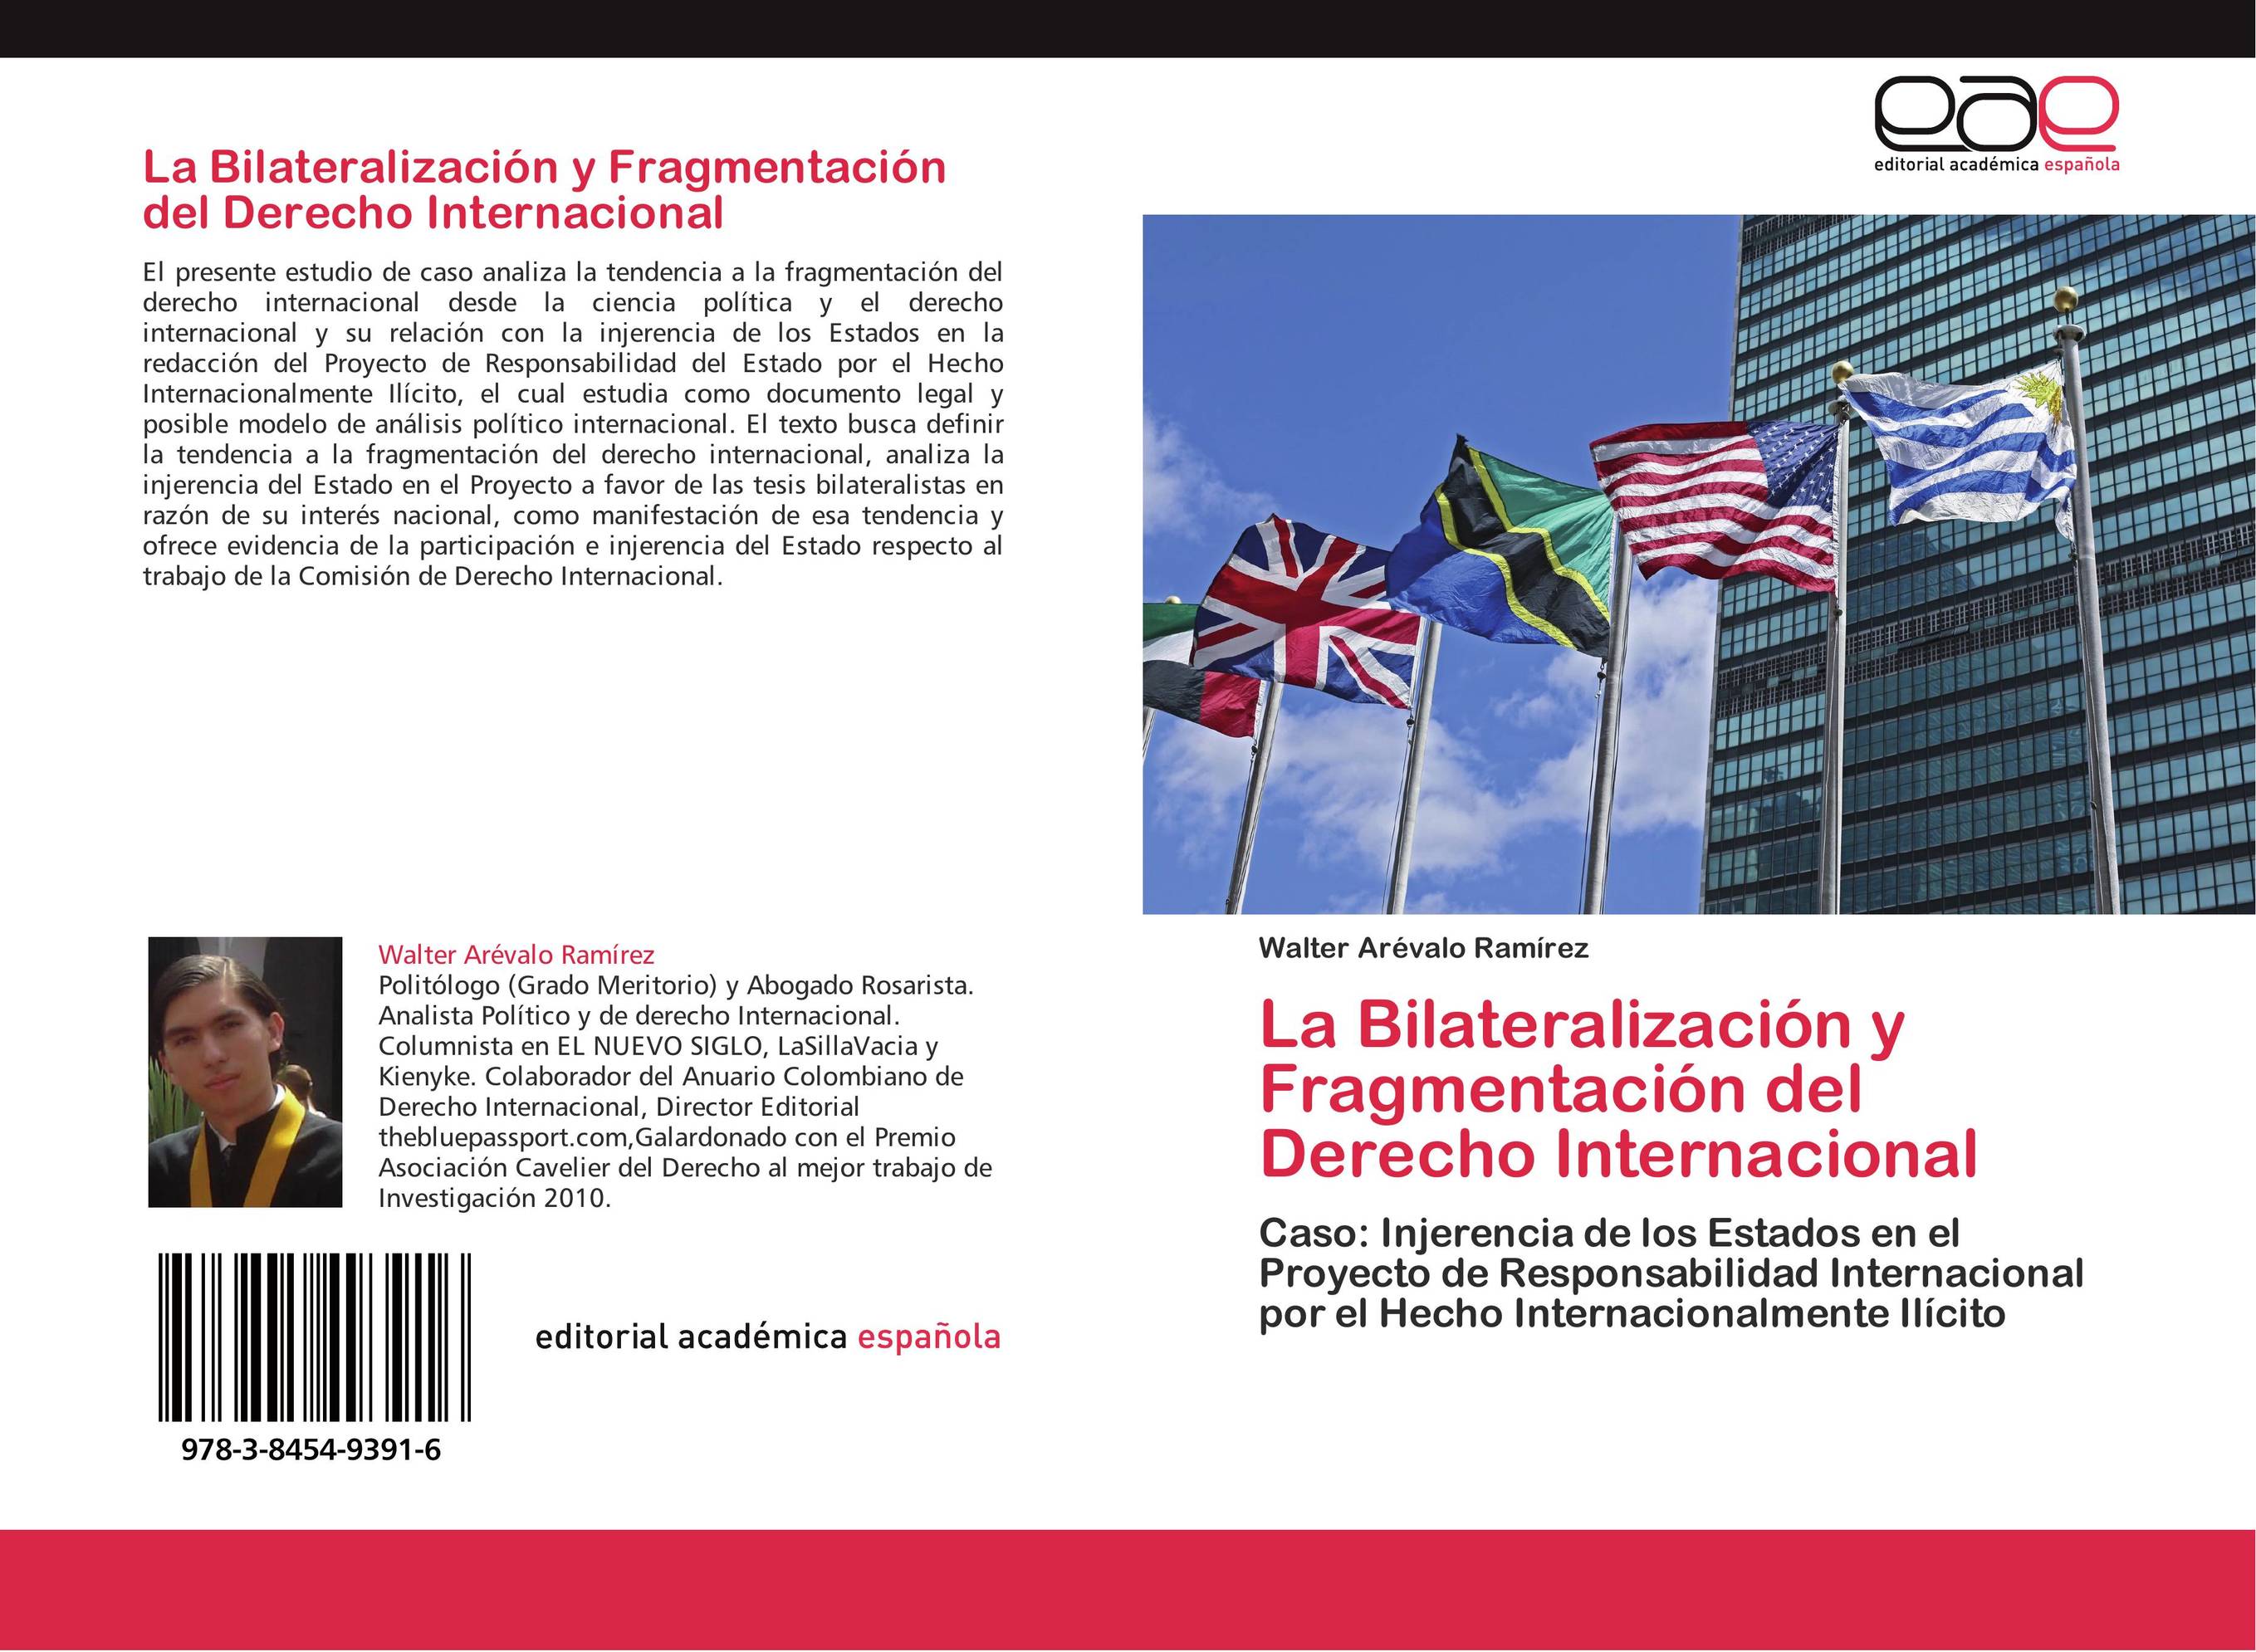 La Bilateralización y Fragmentación del Derecho Internacional